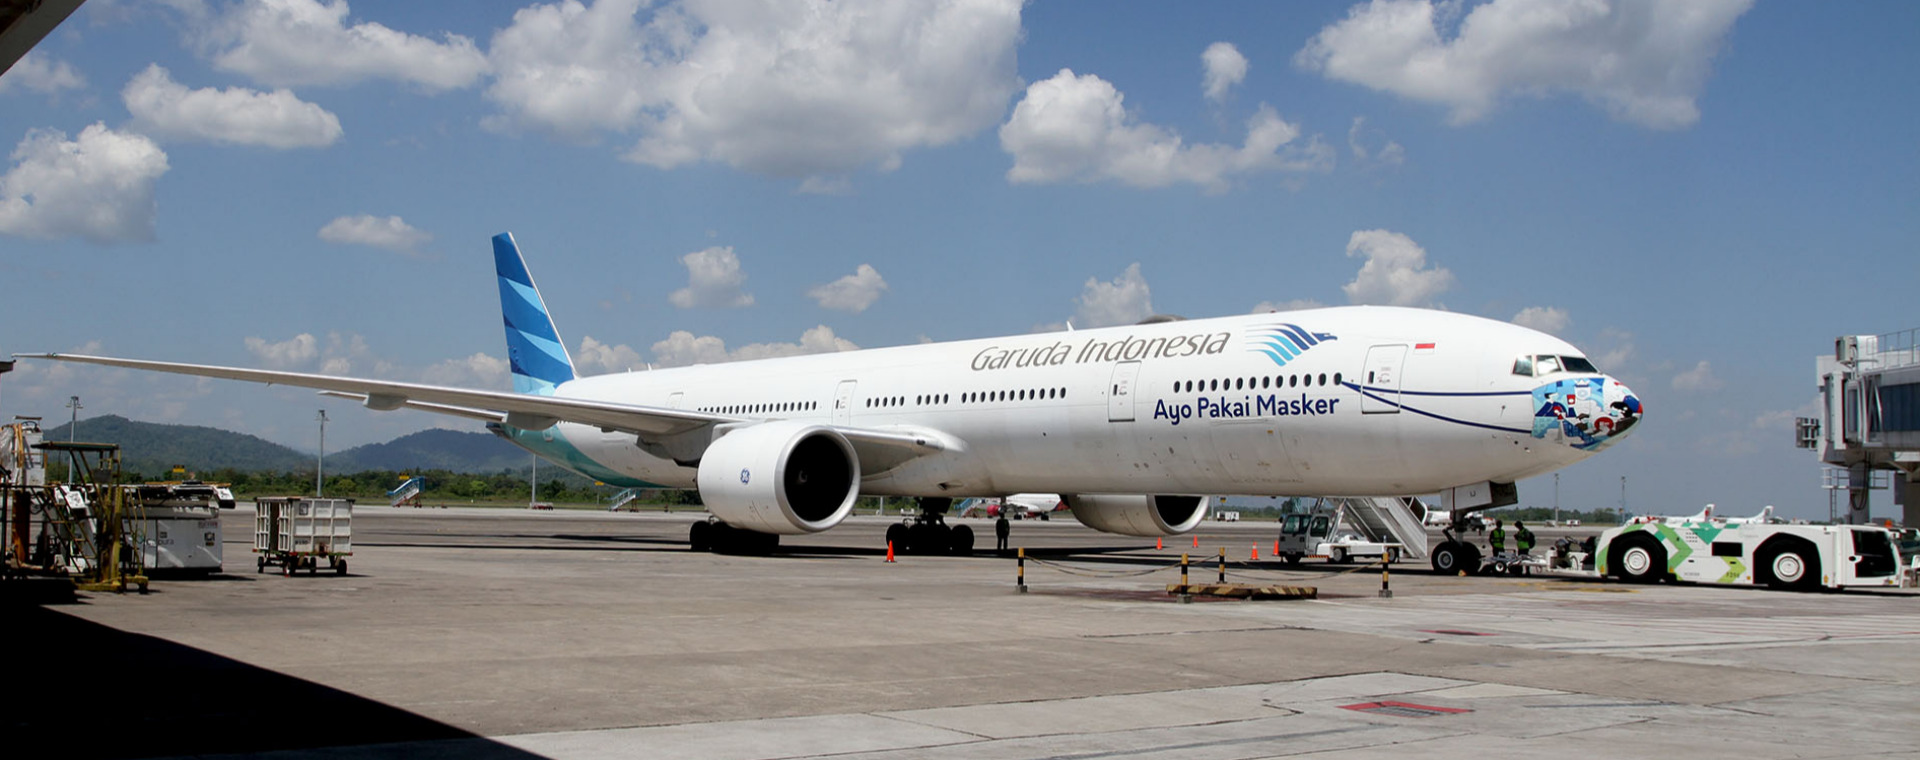  Siap-siap Tiket Pesawat Makin Mahal karena Transisi Energi Penerbangan